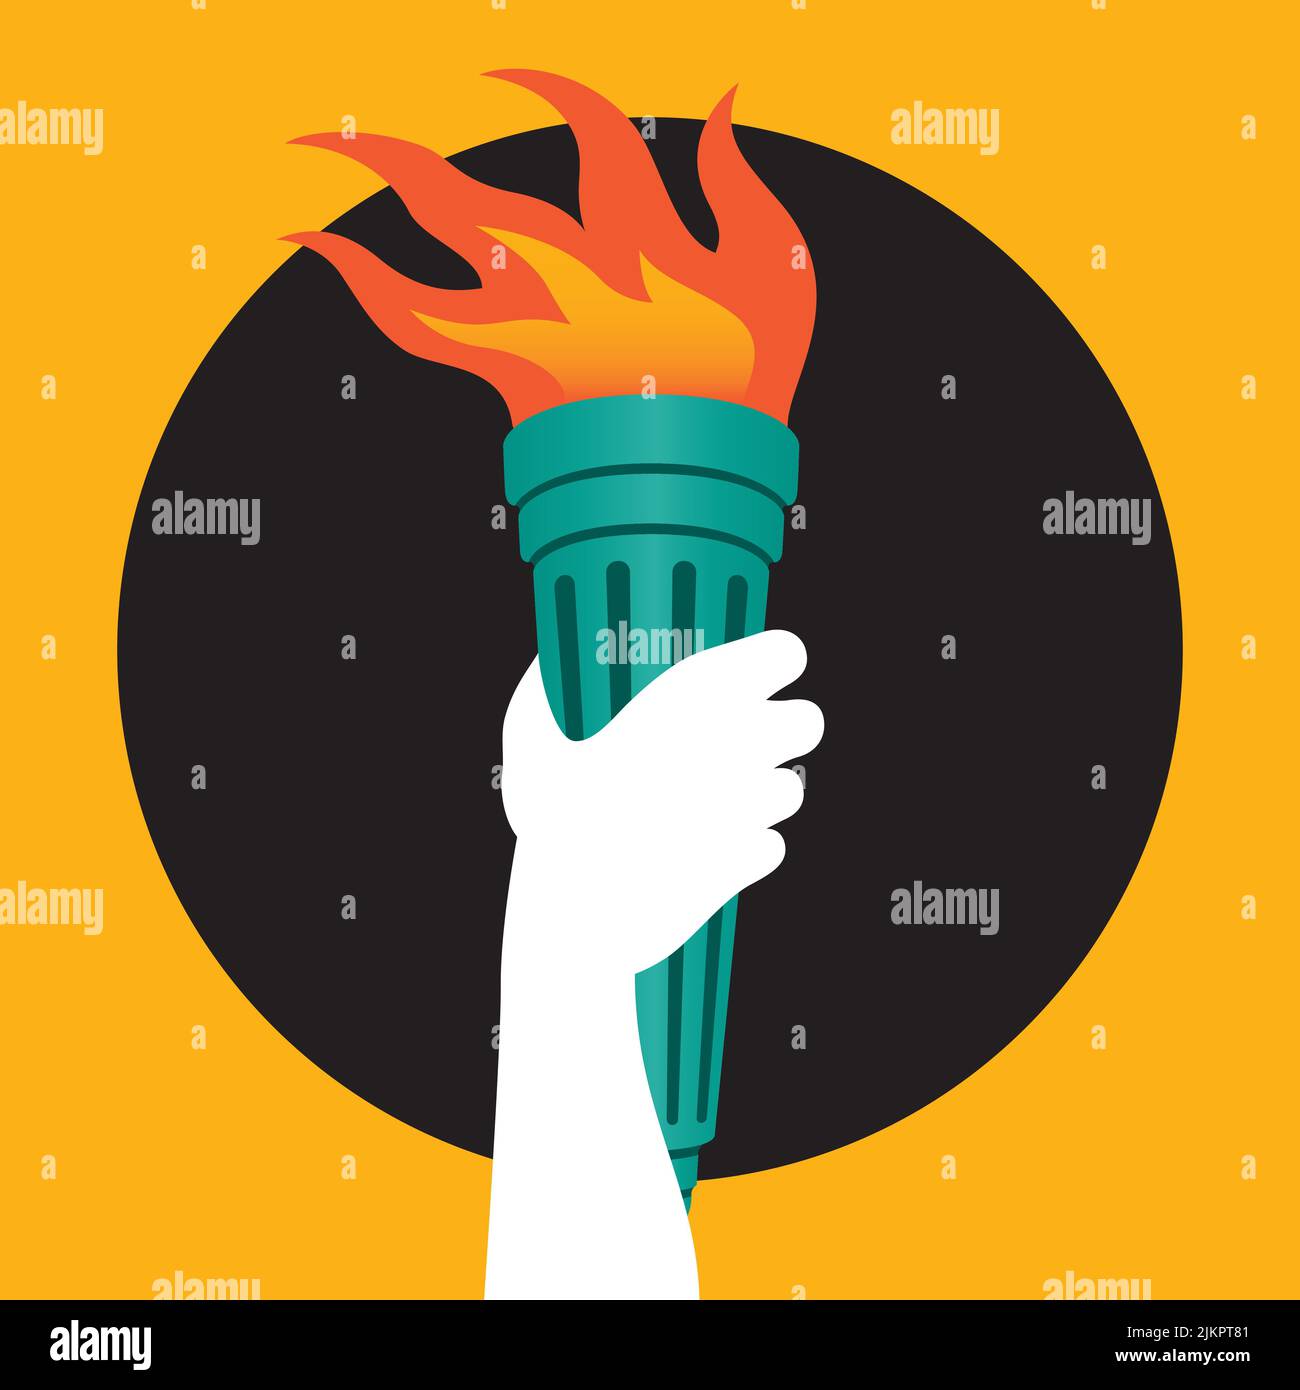 Badge ou icône de bras tenant une torche à brûler illustration vectorielle d'un bras de personnes tenant une torche à flamboyante haut pour symboliser l'illumination, la liberté et k Illustration de Vecteur